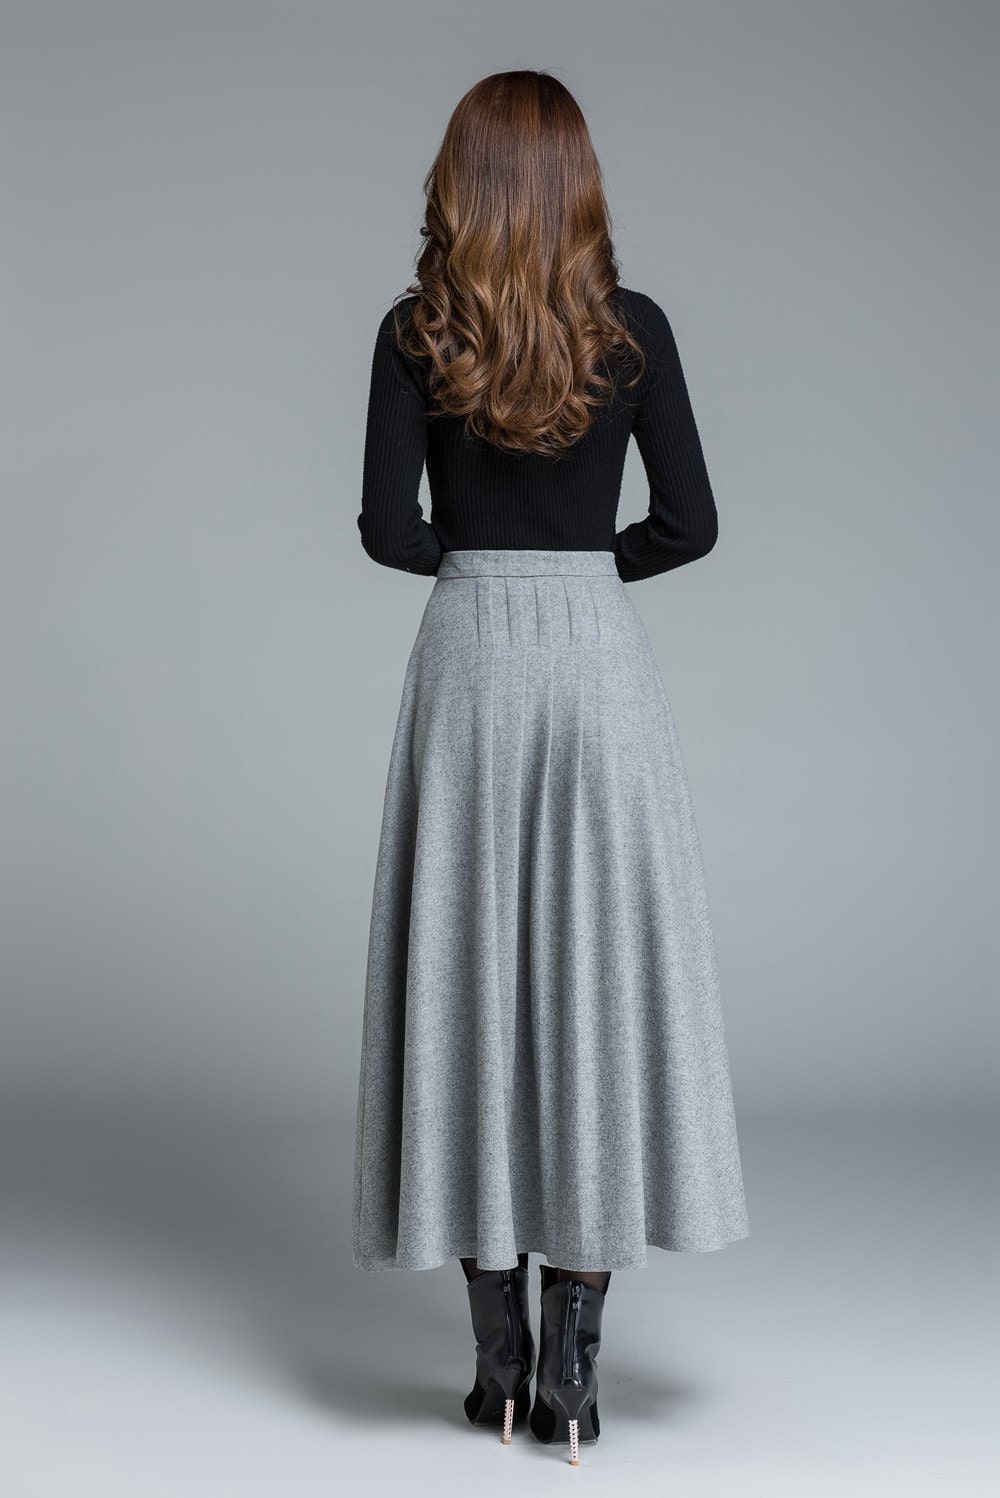 Light Grey Skirt, Wool Skirt, Winter Skirt, Pleated Skirt, Maxi Skirt, Winter  Wool Skirt, Long Skirt, Skirt for Women, Handmade Skirt 1643 